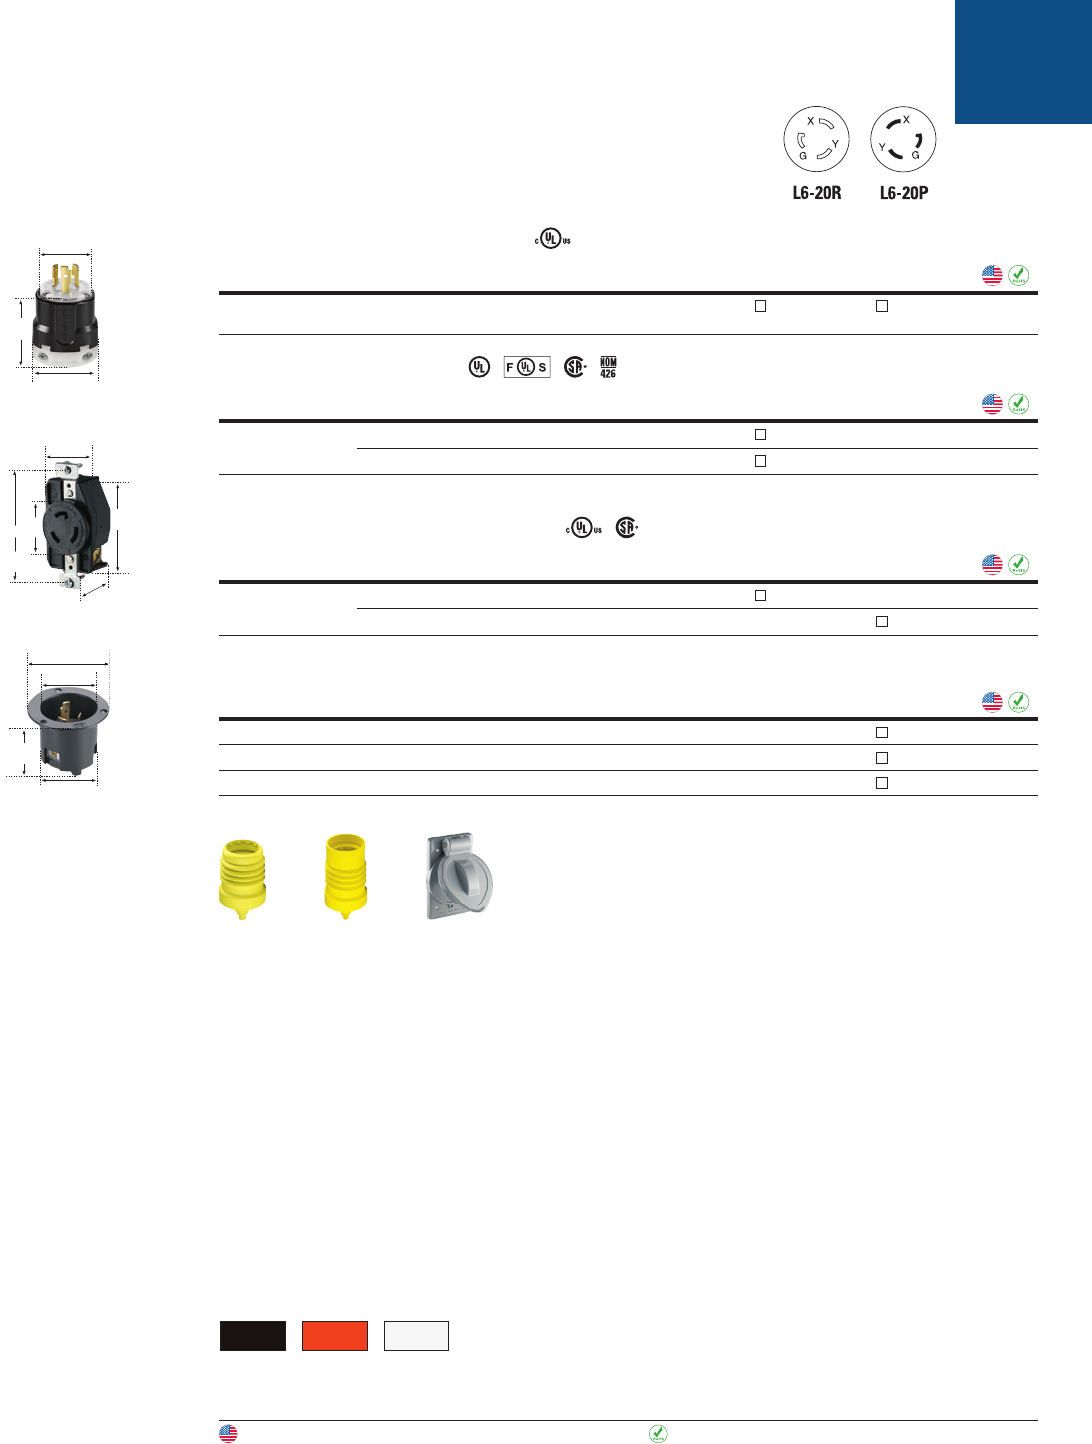 IGL16-20R 20 amp 480V 3 phase locking receptacle IG